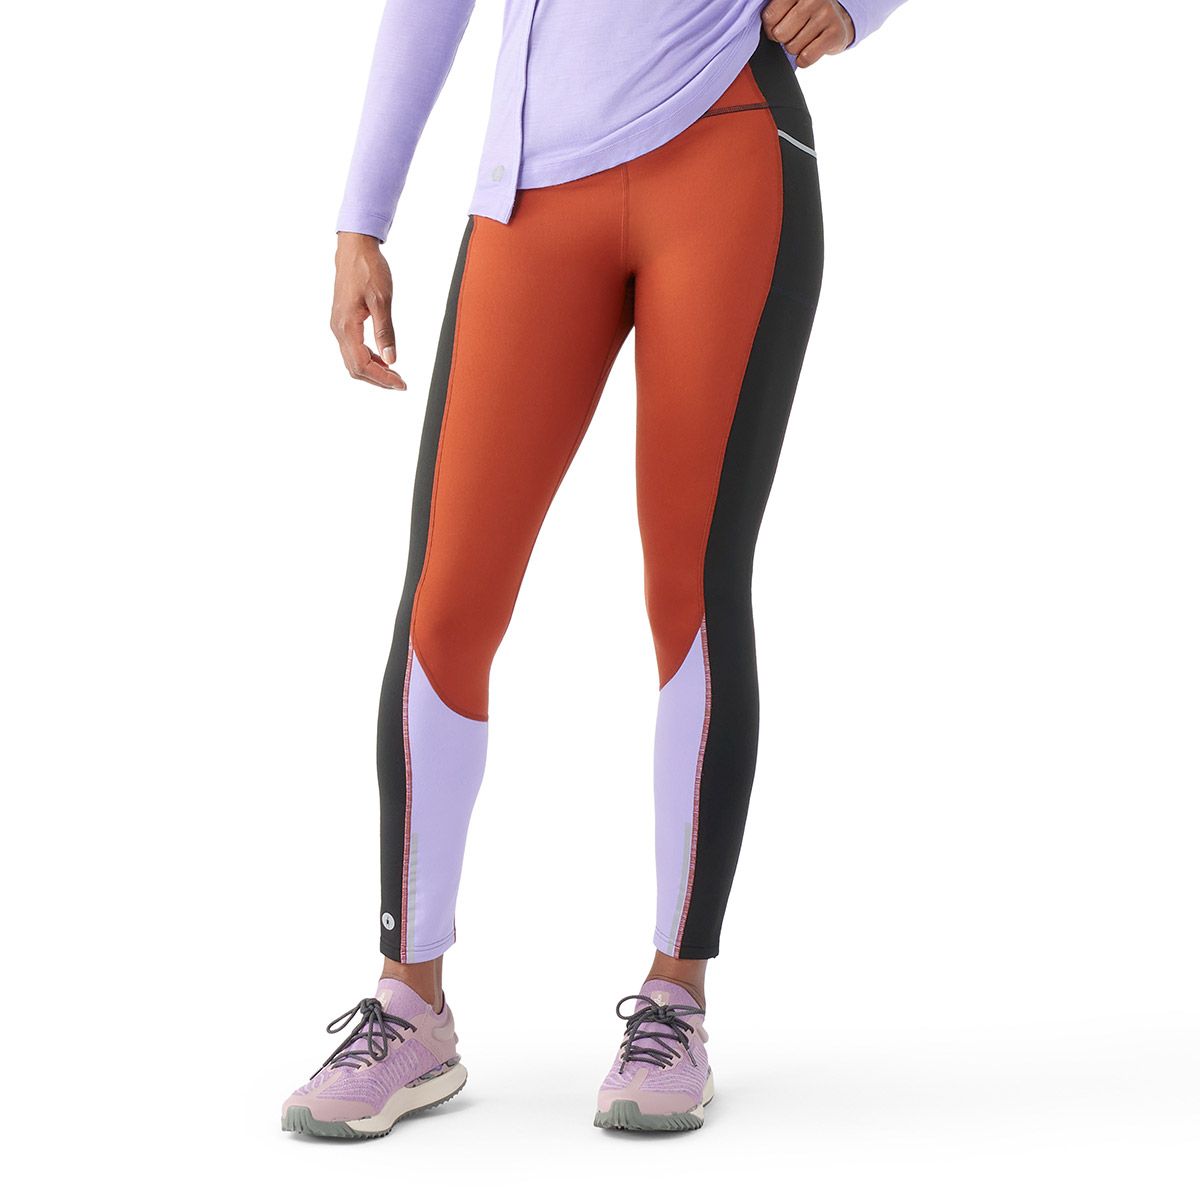 Solowomen - 😍 Women's Active Color Block Sports Leggings (S-L